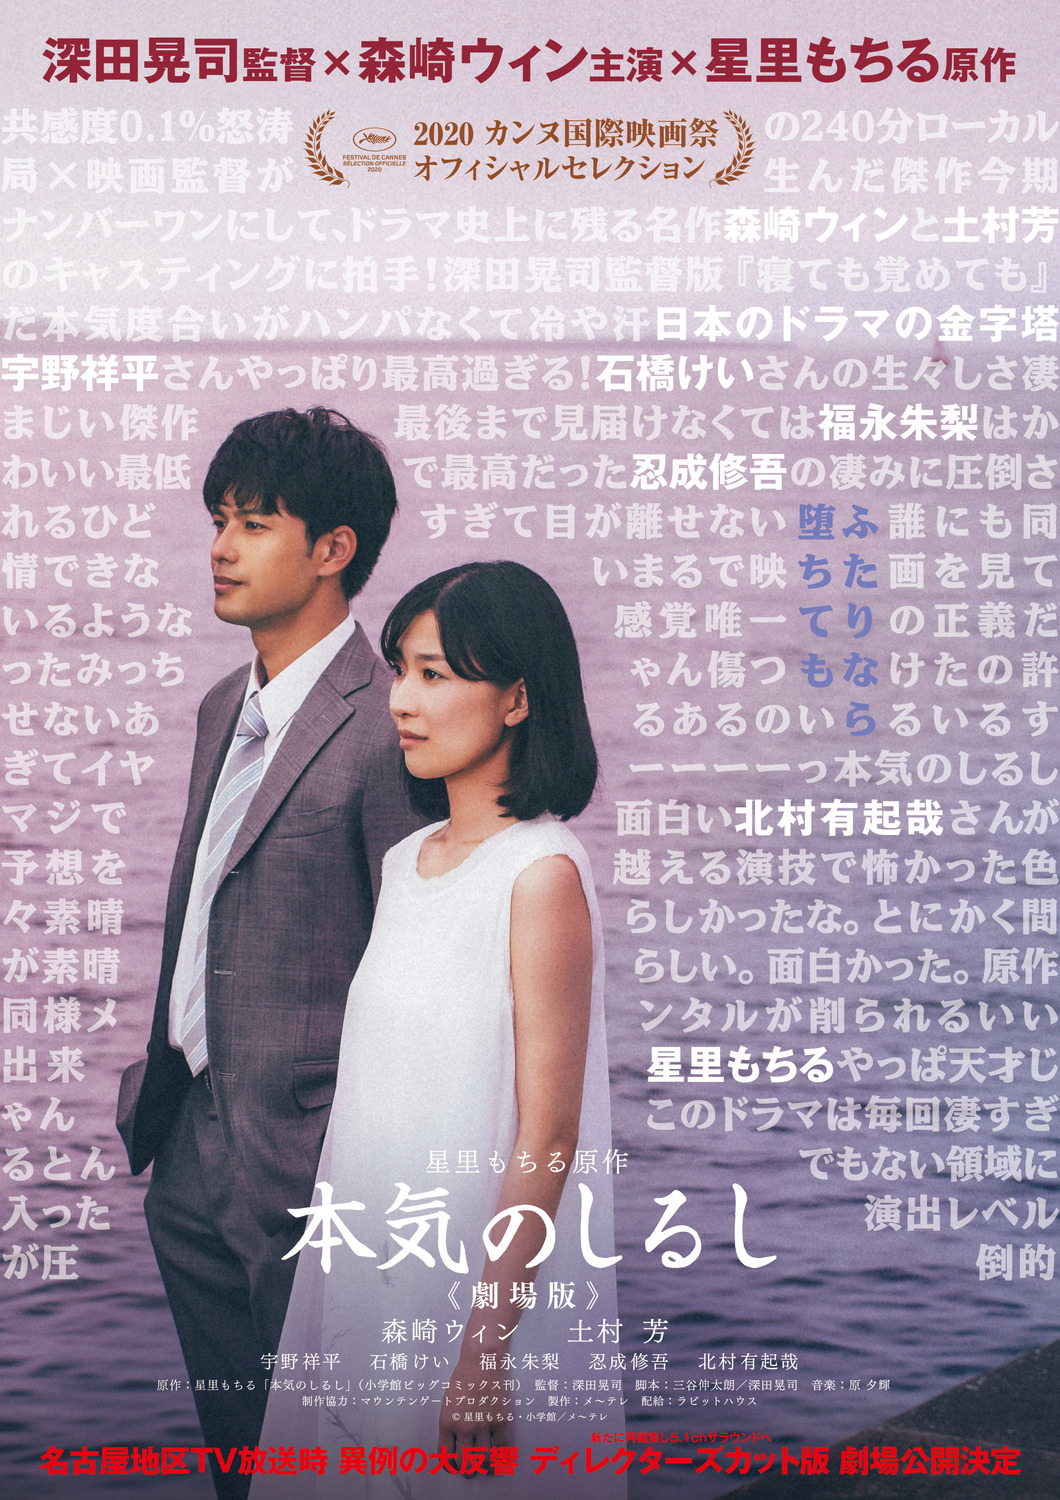 Extra Large Movie Poster Image for Honki no shirushi: Gekijôban (#1 of 3)